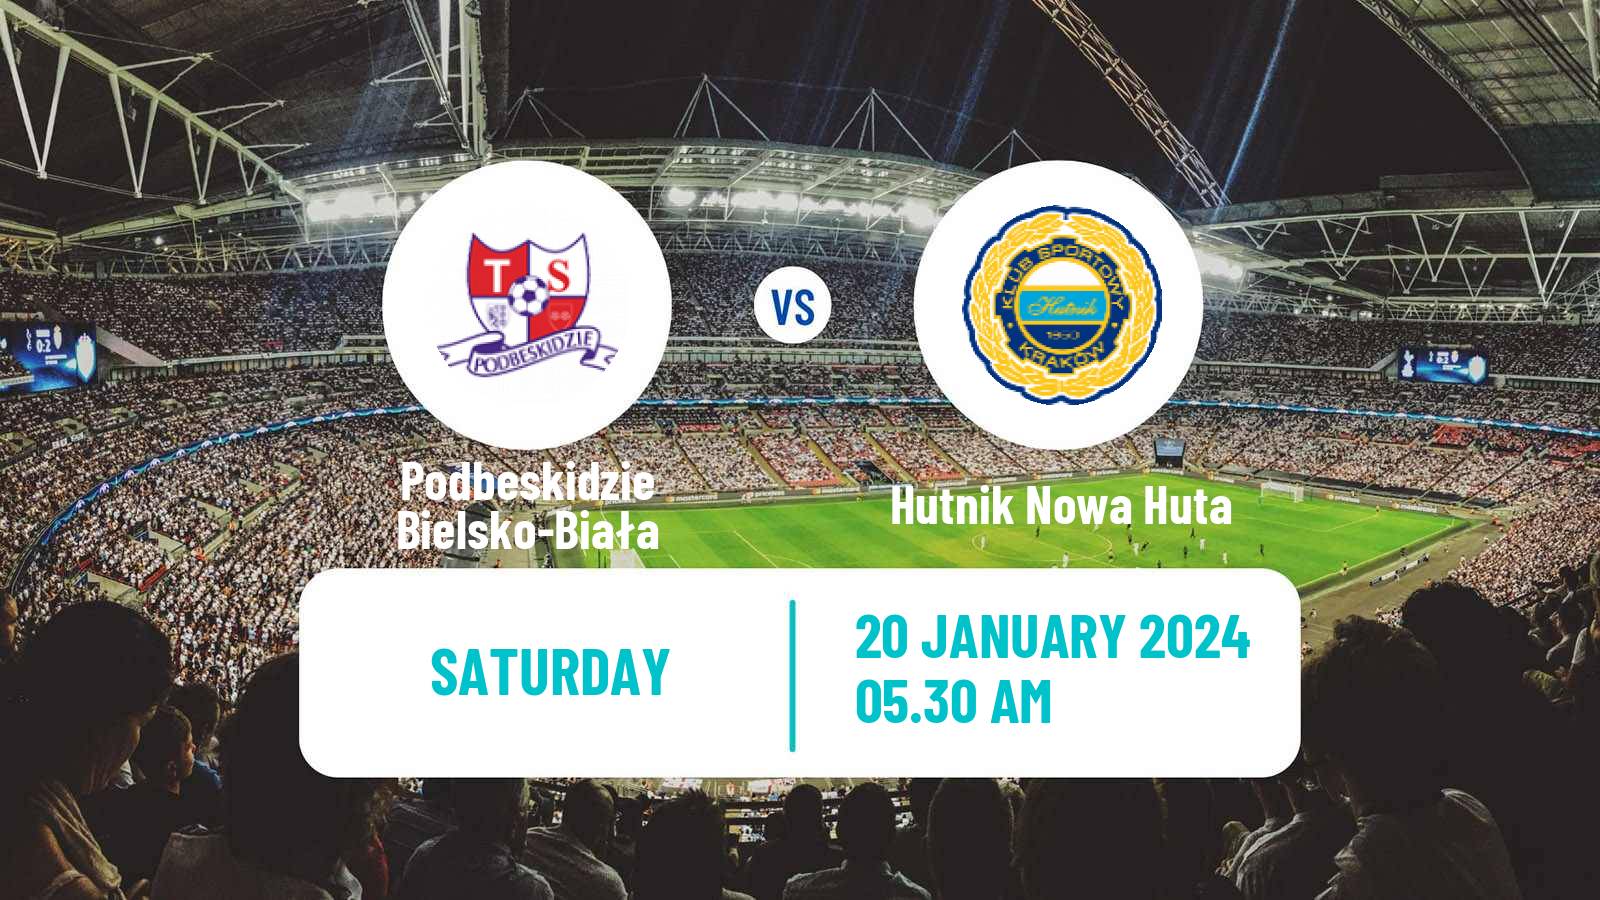 Soccer Club Friendly Podbeskidzie Bielsko-Biała - Hutnik Nowa Huta